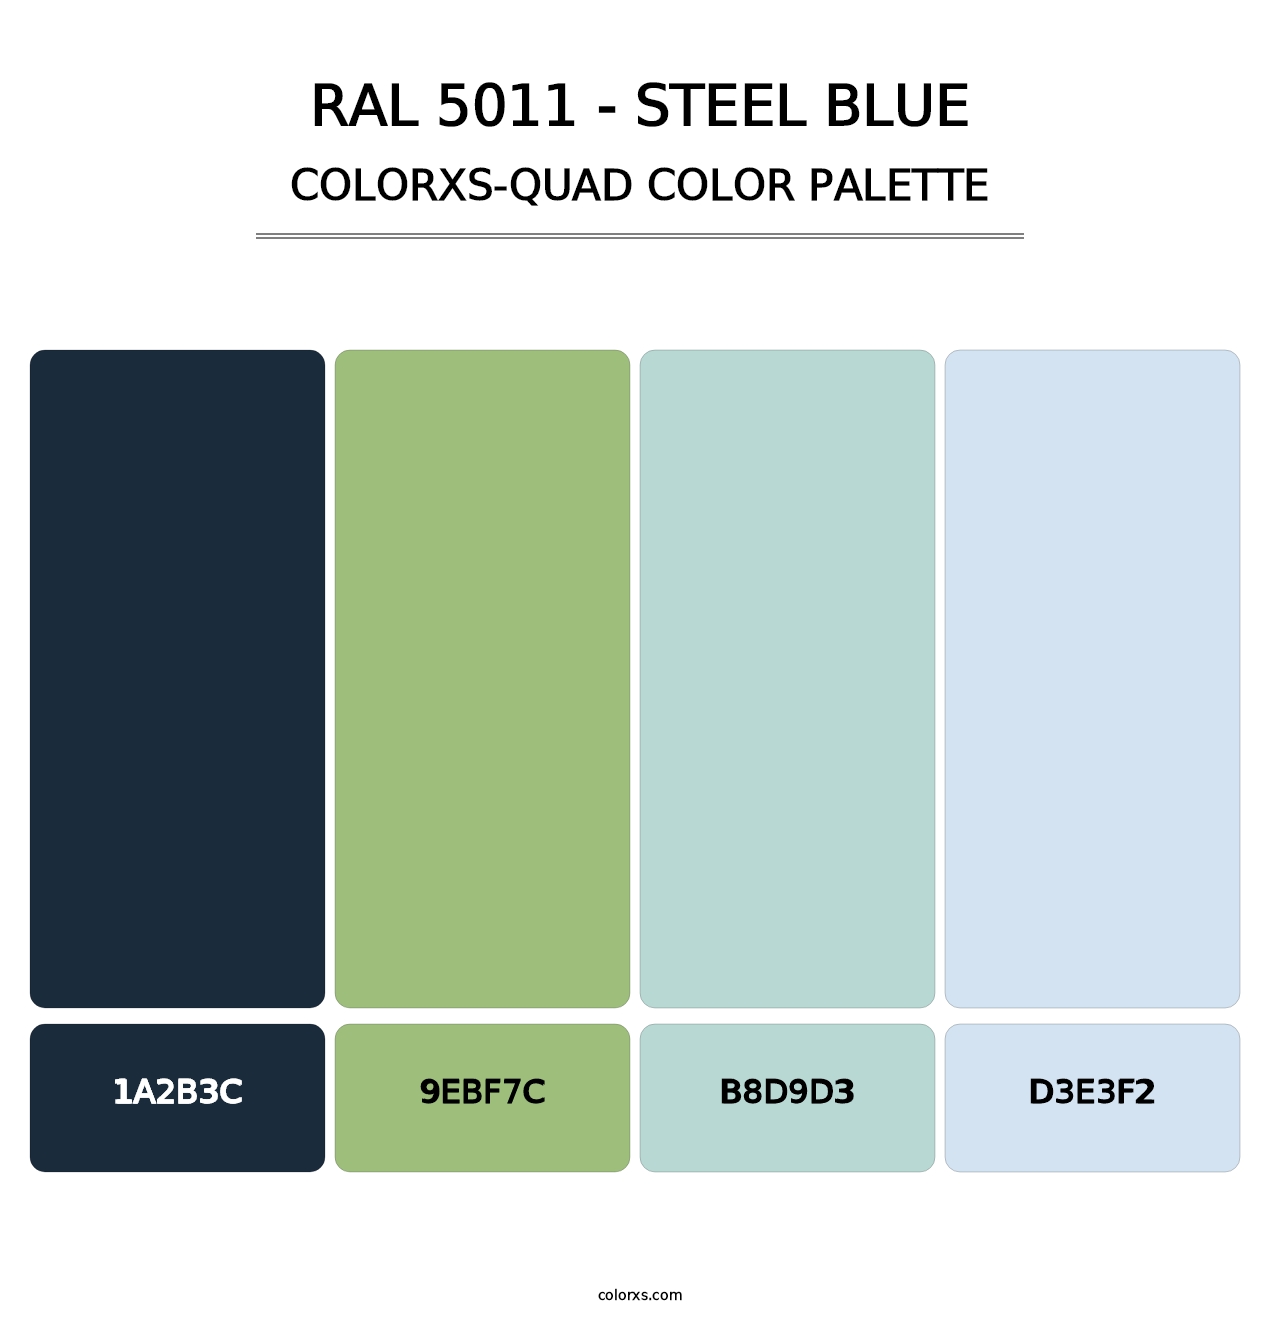 RAL 5011 - Steel Blue - Colorxs Quad Palette